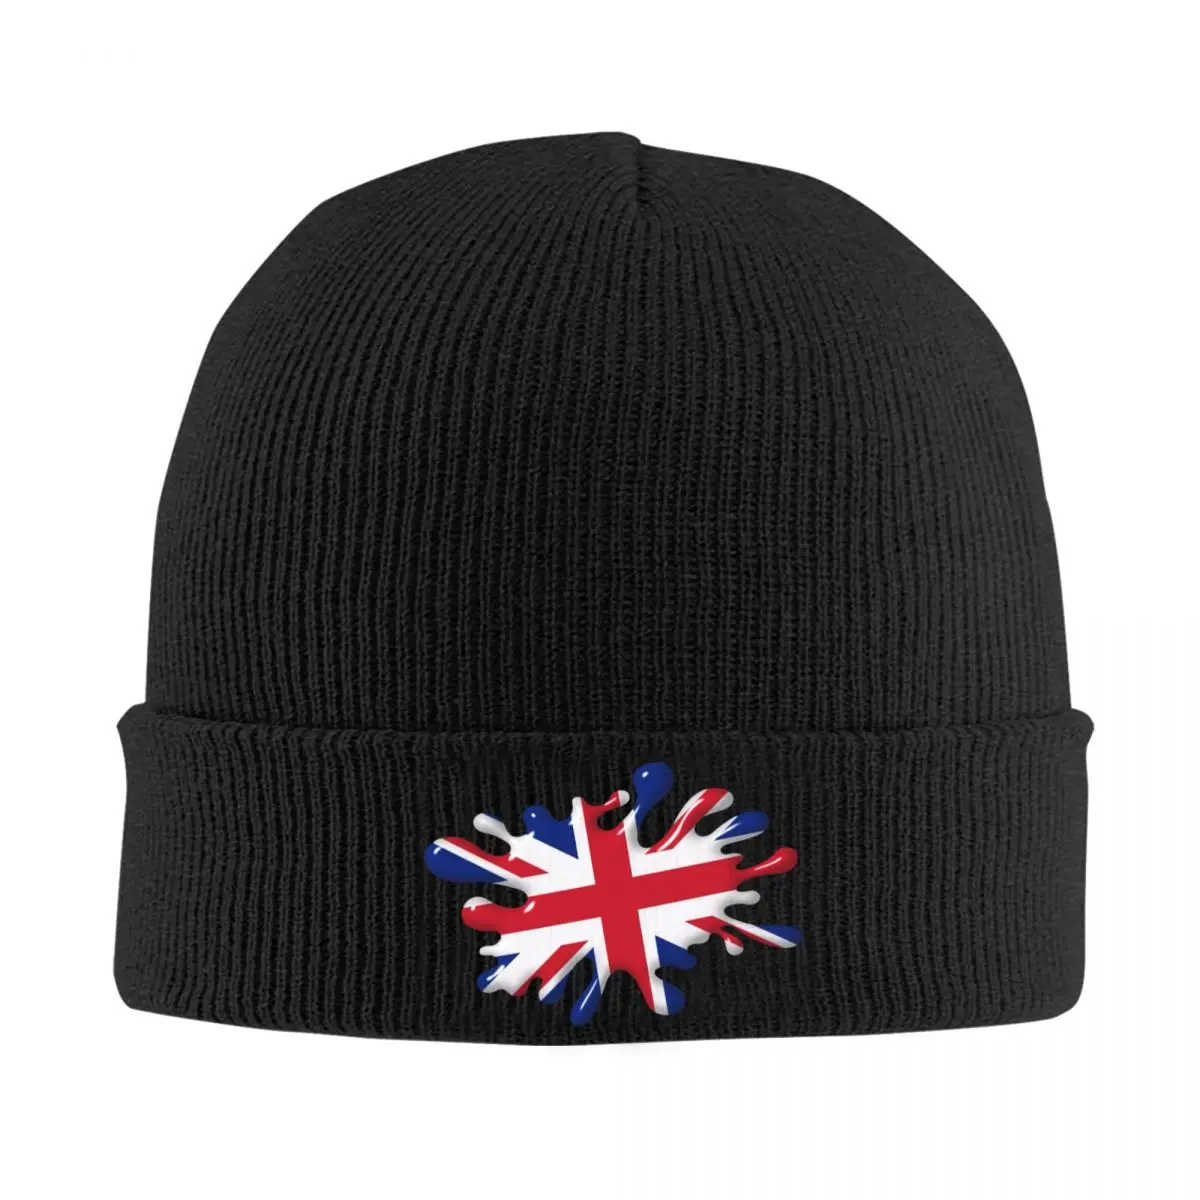 

Union Jack British Flag Skullies Beanies Caps Unisex Winter Warm Knit Hat Men Women Hip Hop Adult Bonnet Hats Outdoor Ski Cap